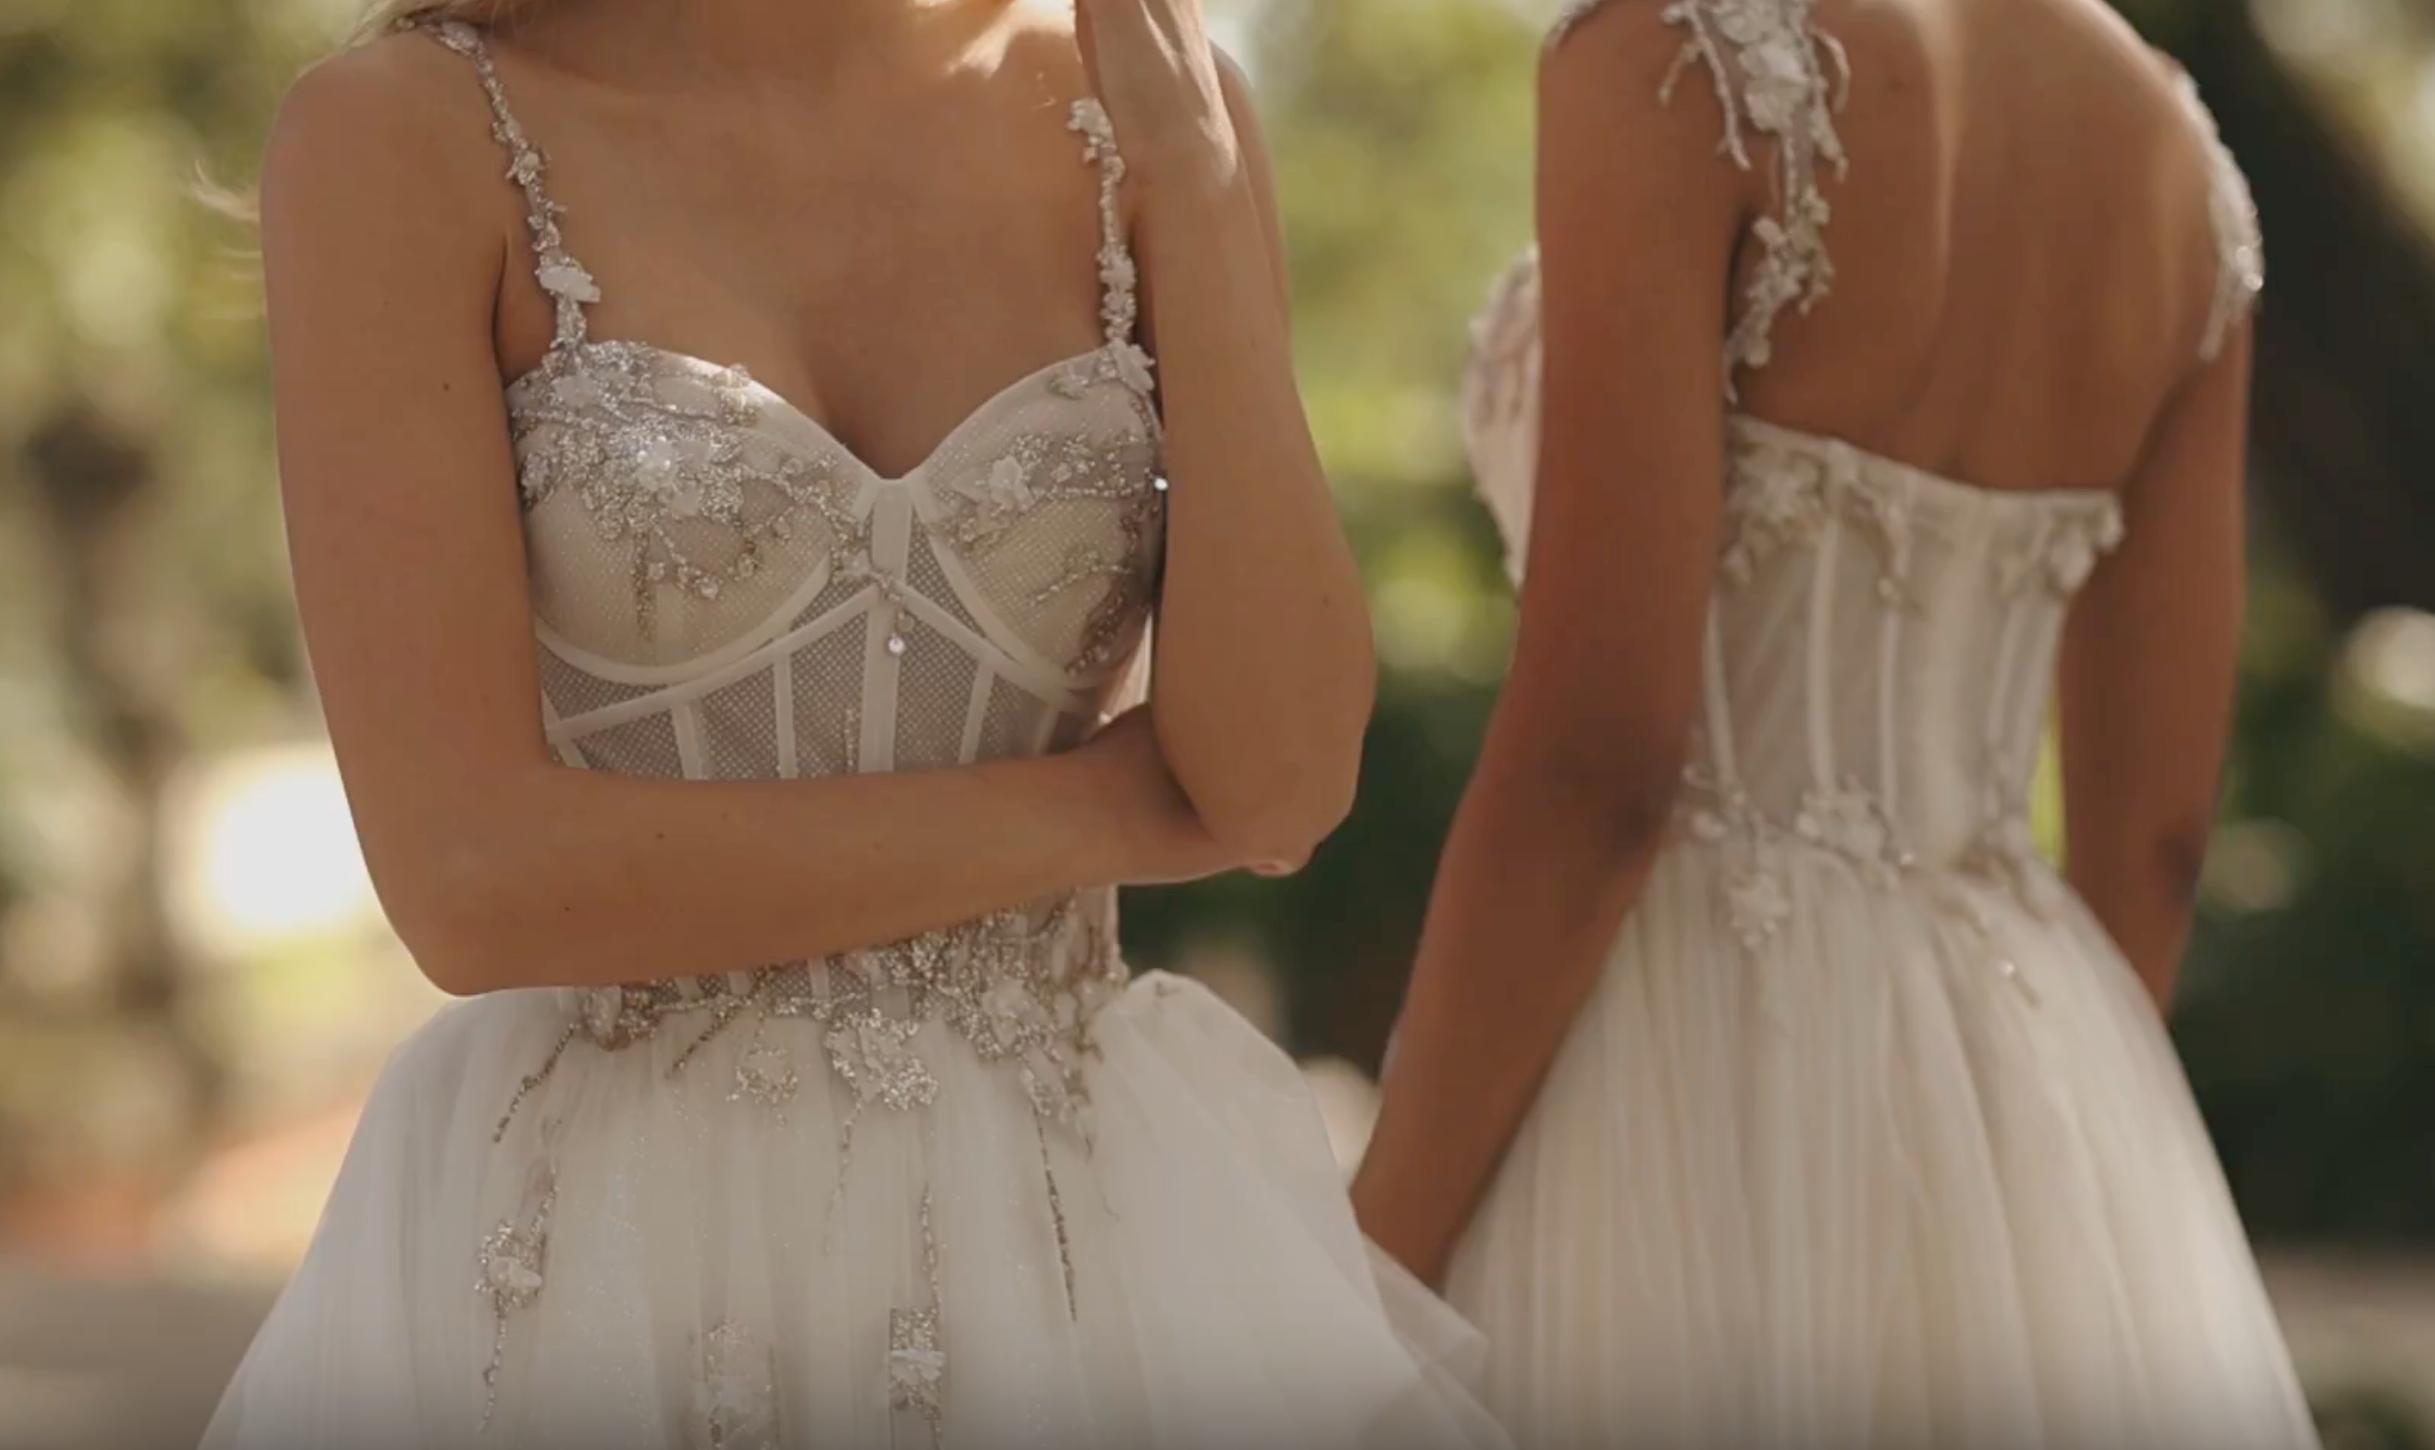 two women wearing wedding dresses